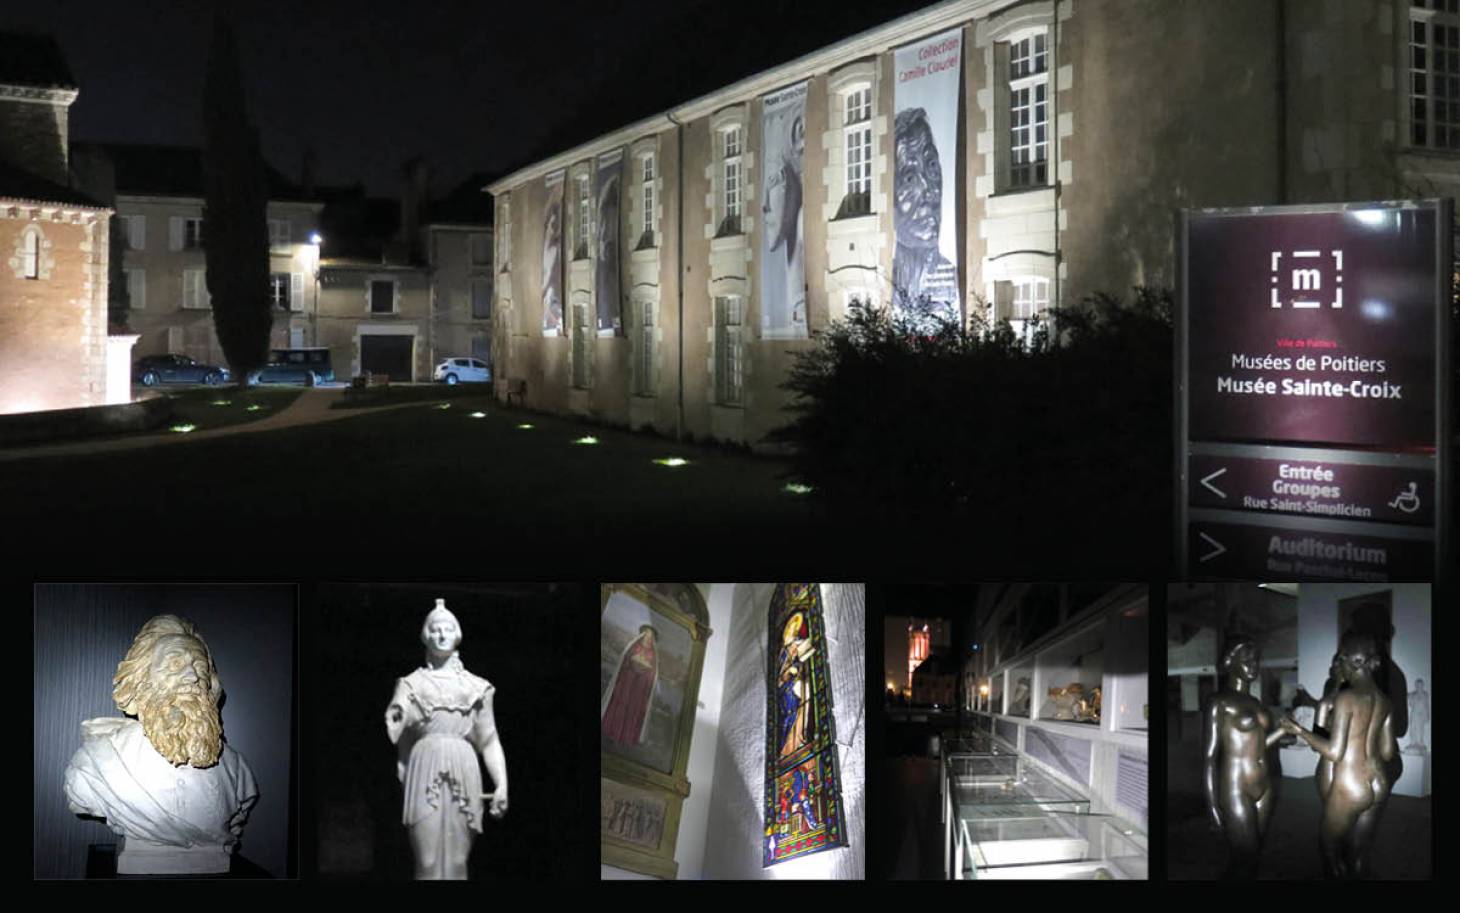 Nuits insolites - Le musée Sainte-Croix en sourdine